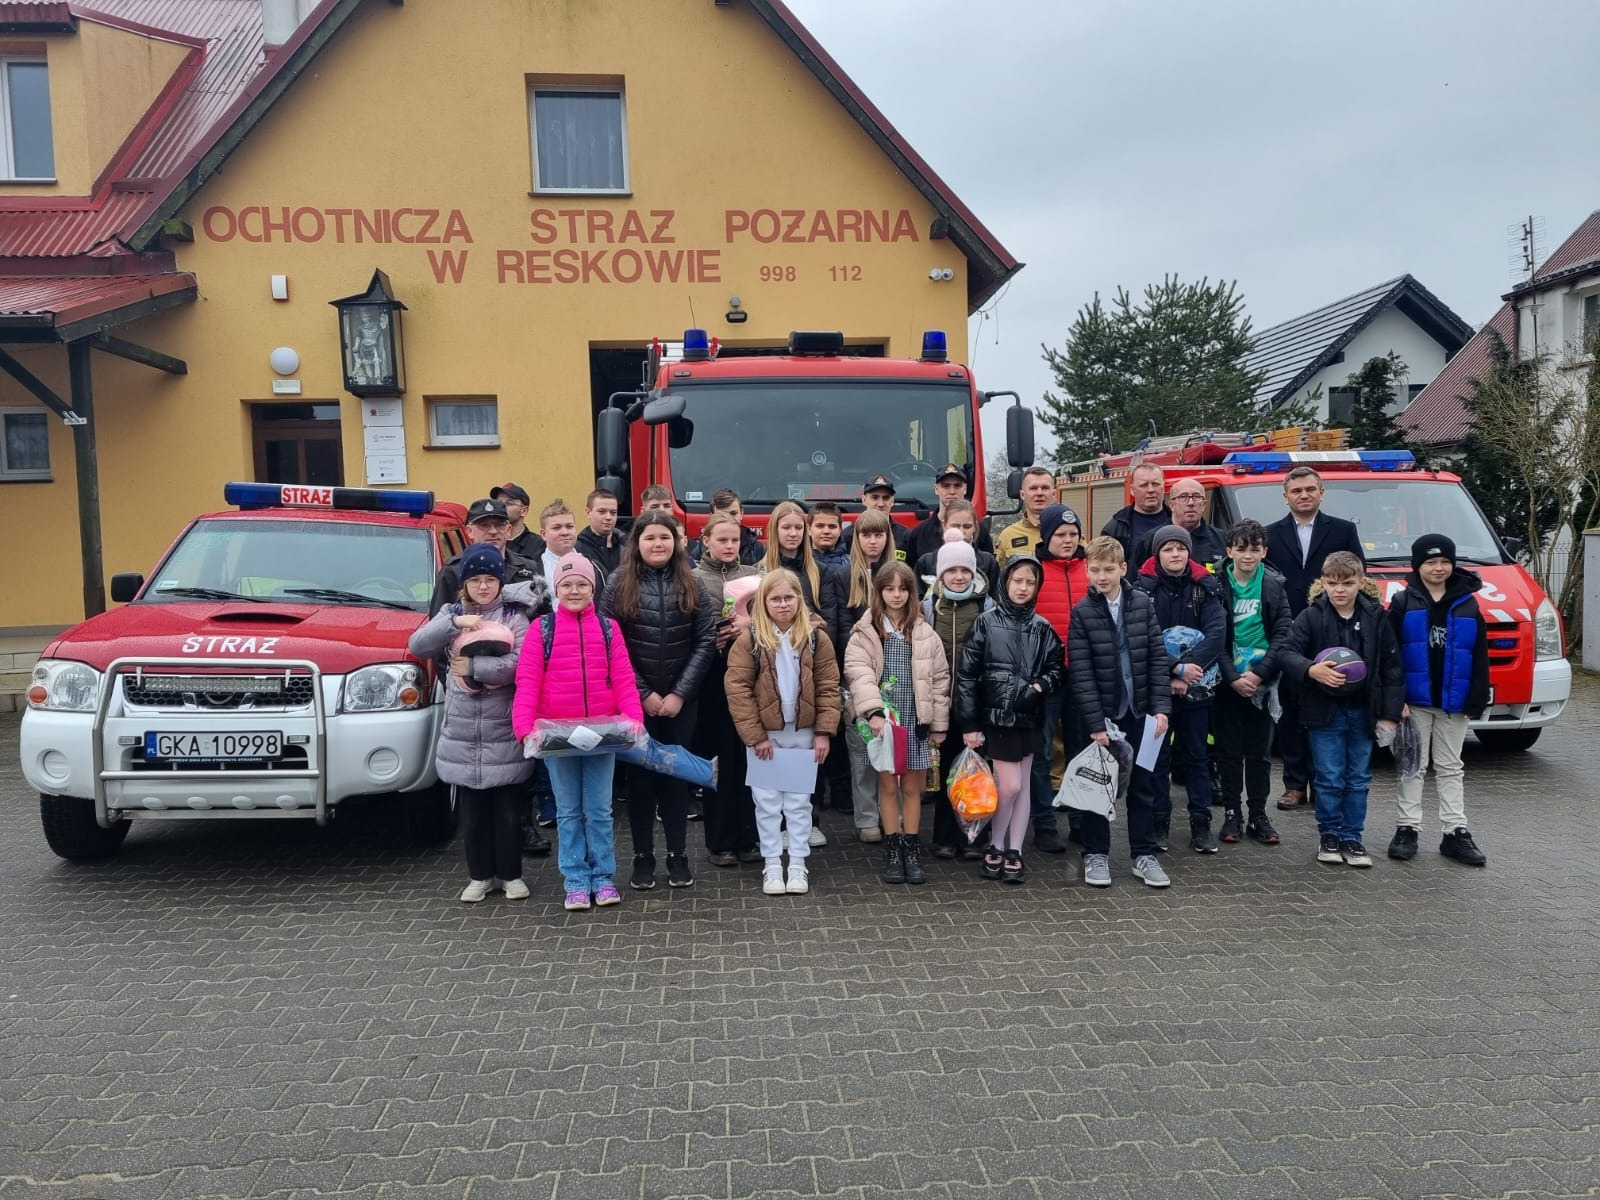 Dzieci  pozują do zdjęcia przy Ochotniczej Straży Pożarnej w Reskowie, towarzyszą im Strażacy oraz Wójt Gminy Chmielno. 